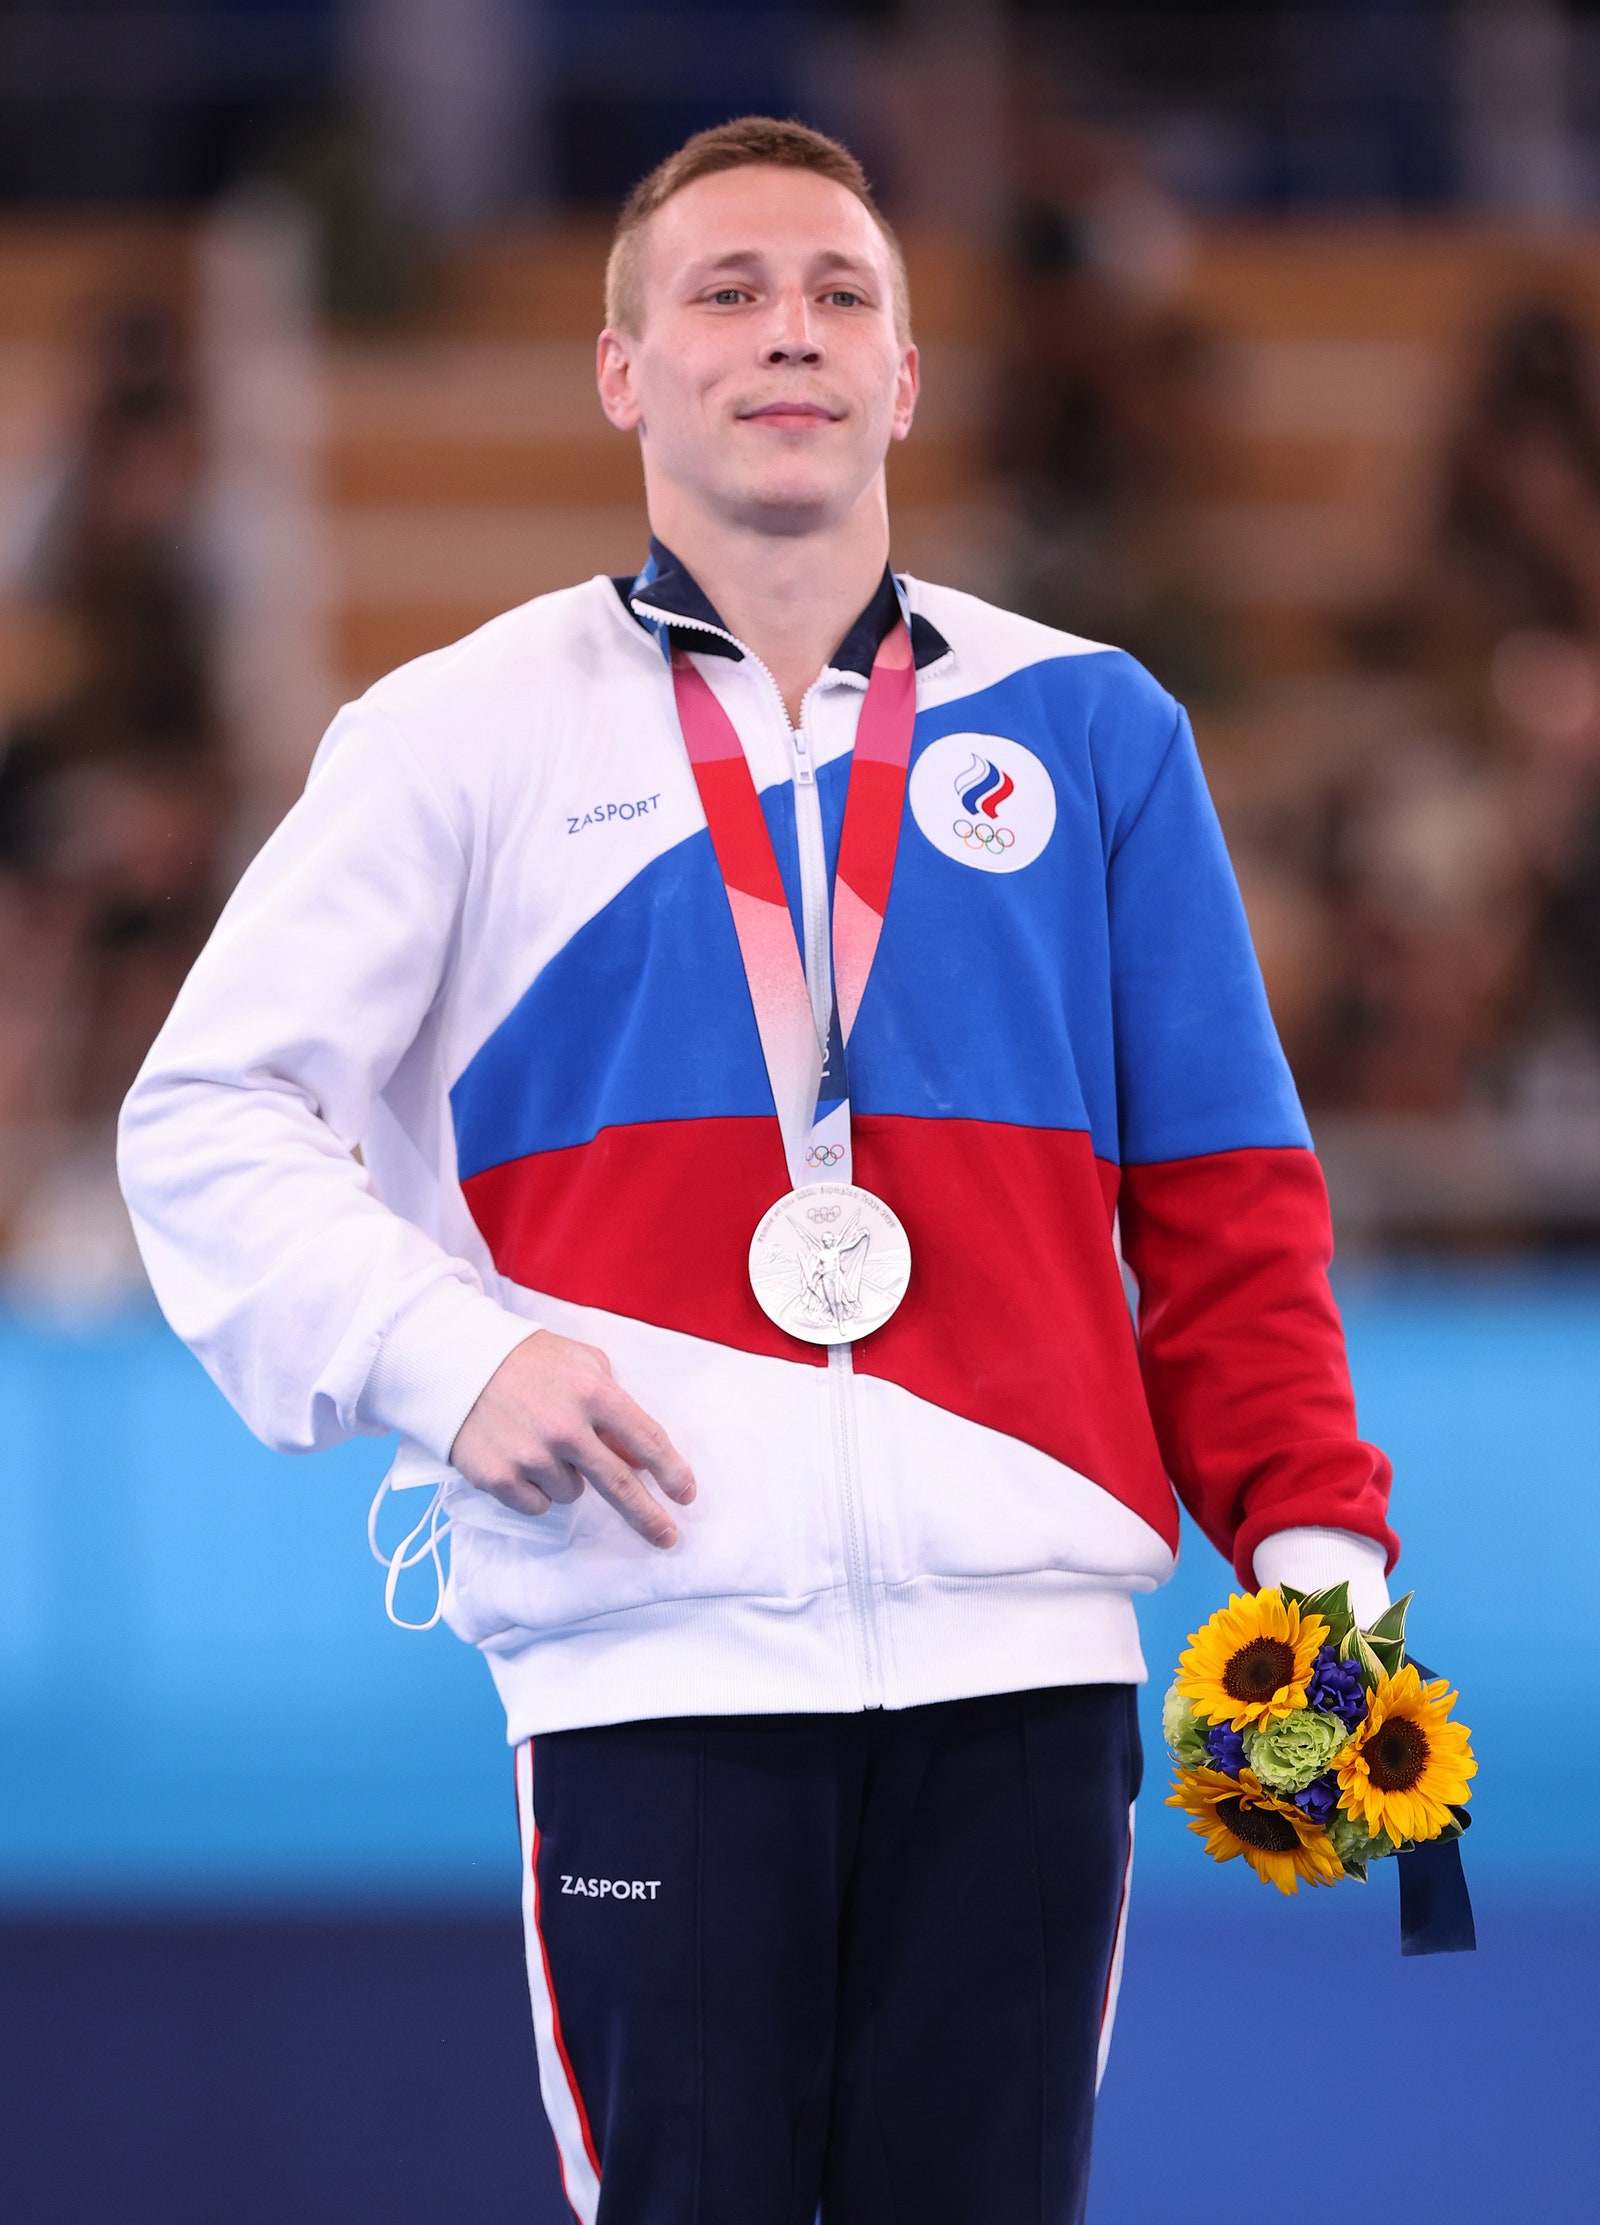 Триумф наших синхронисток 50я медаль российской сборной и другие новости Олимпиады